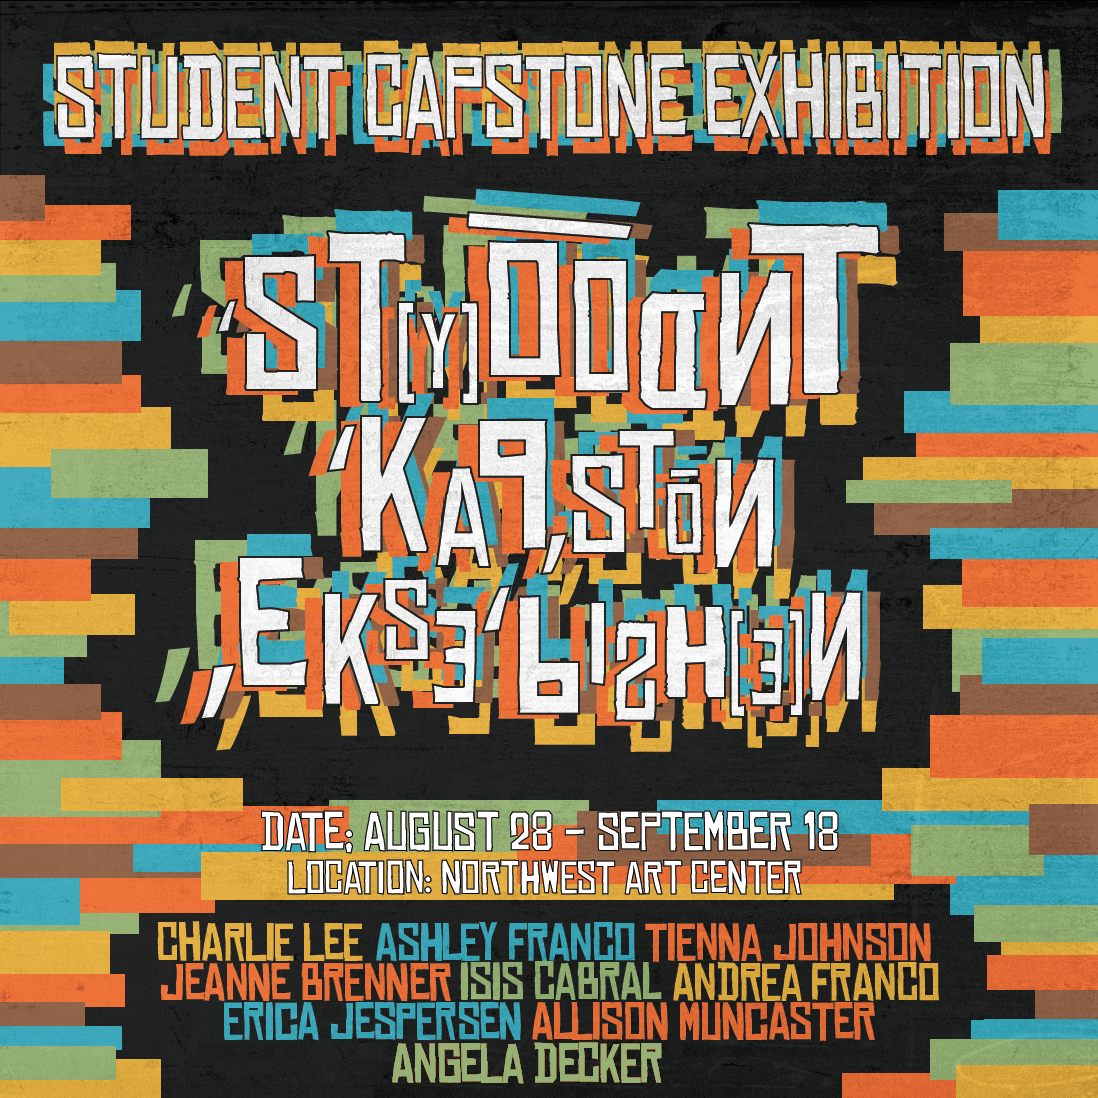 Student Capstone Exhibition Graphic